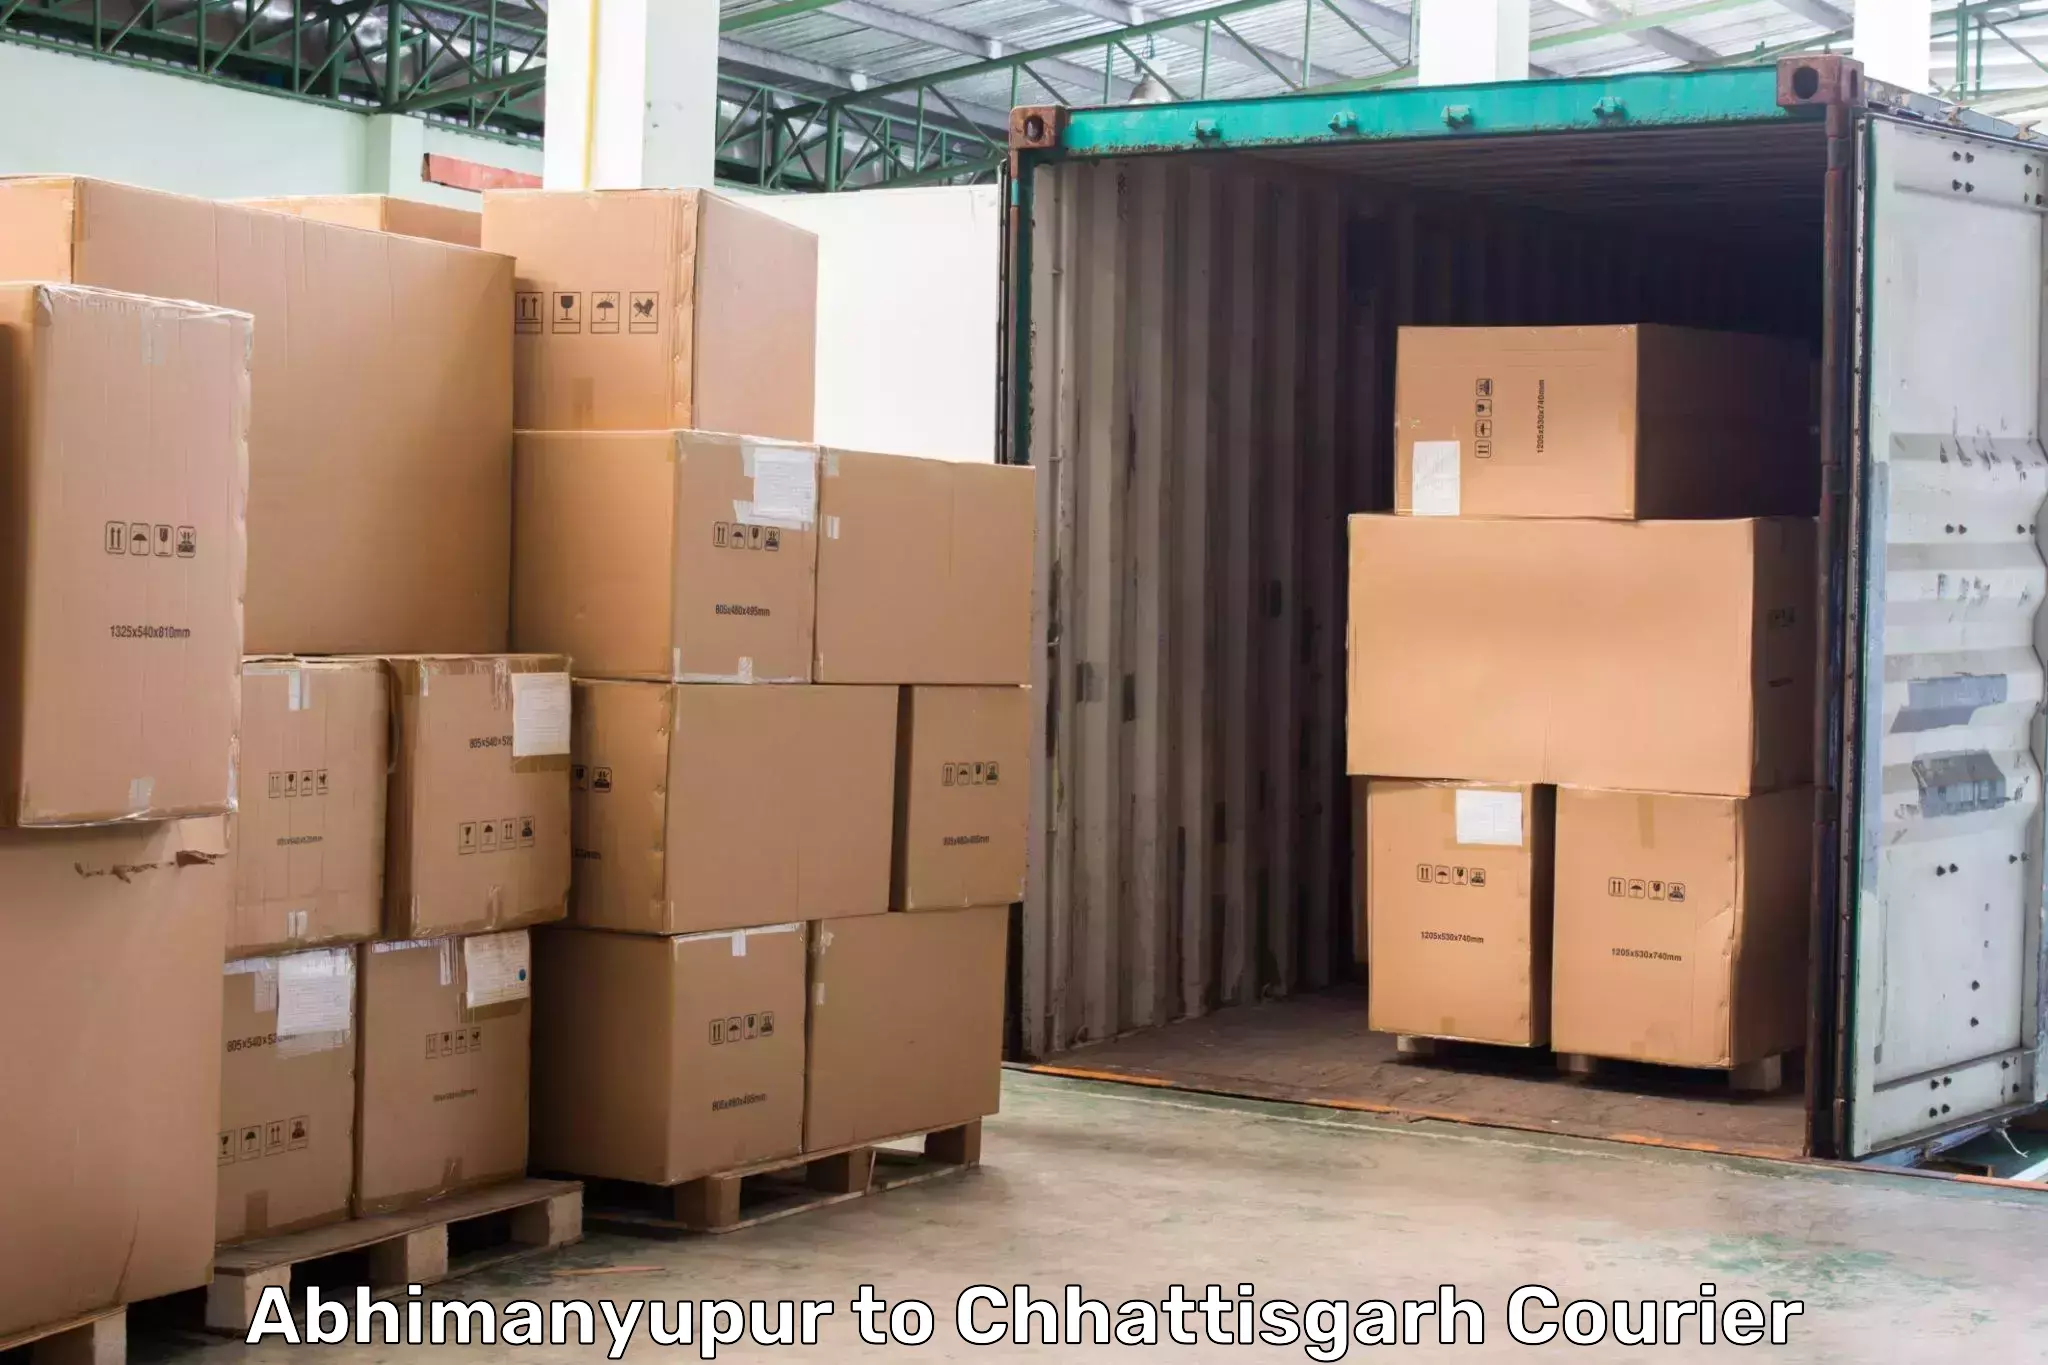 Express logistics service Abhimanyupur to Lailunga